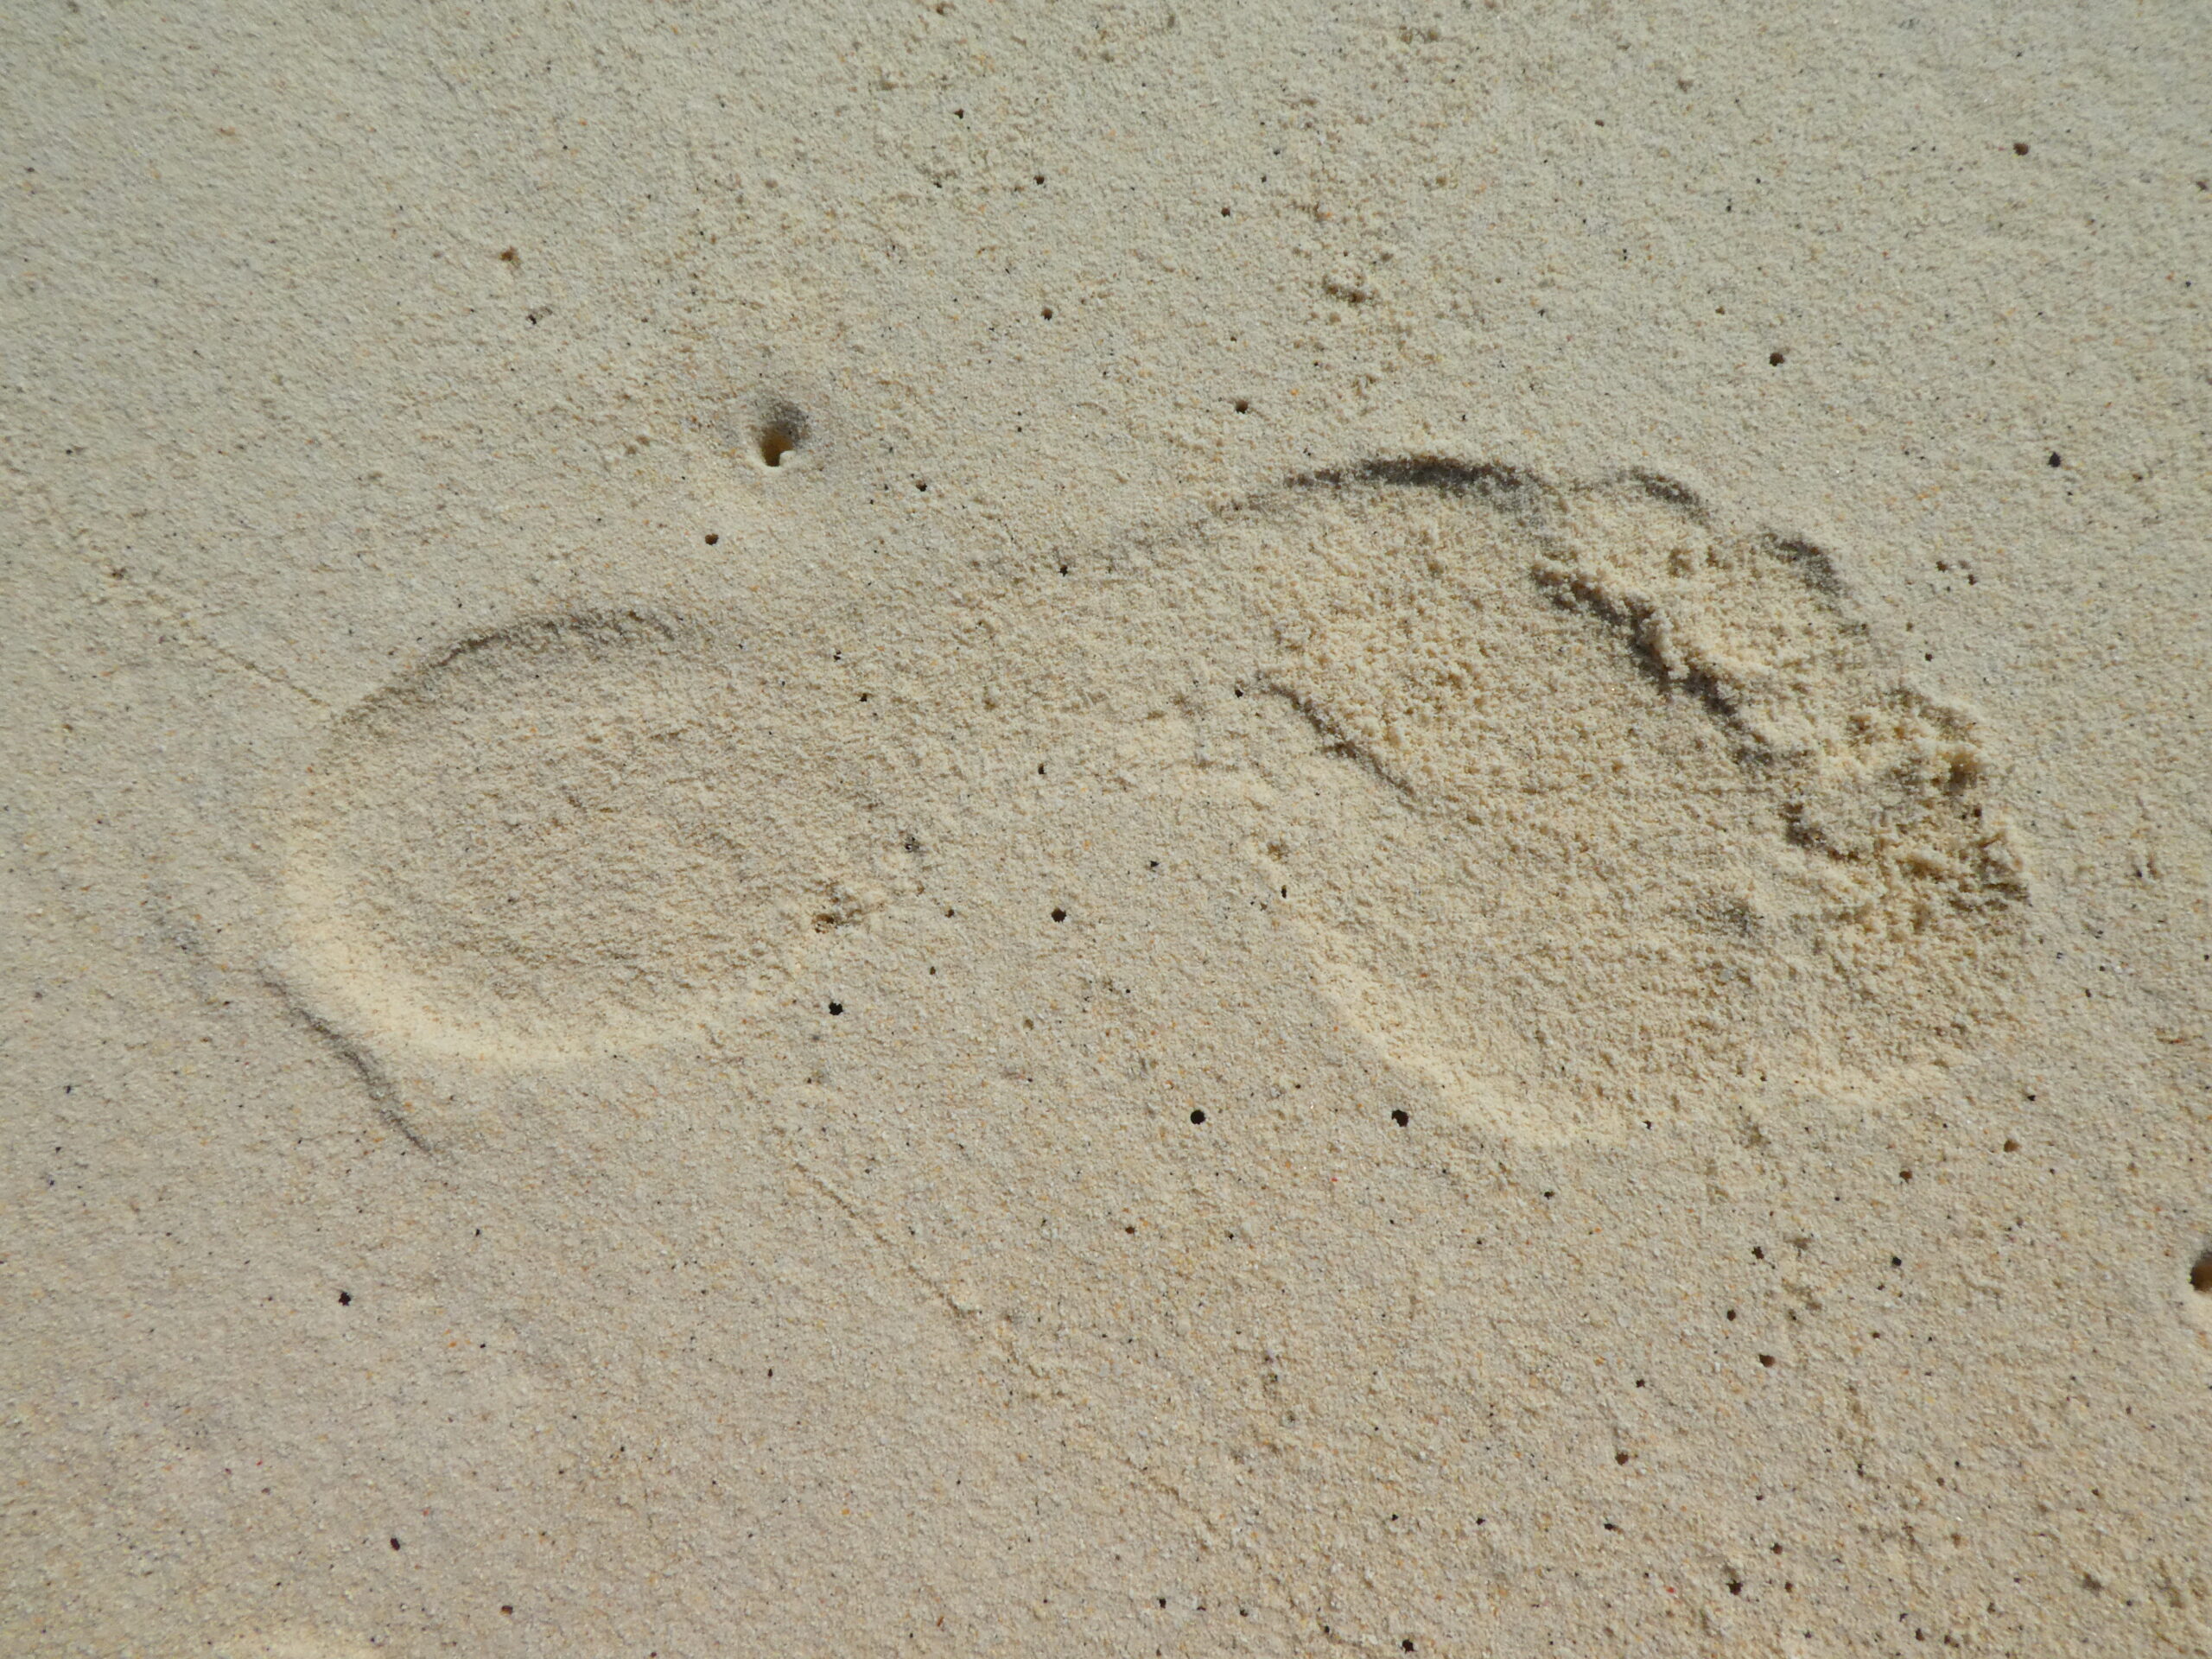 A-footprint-left-on-the-beach